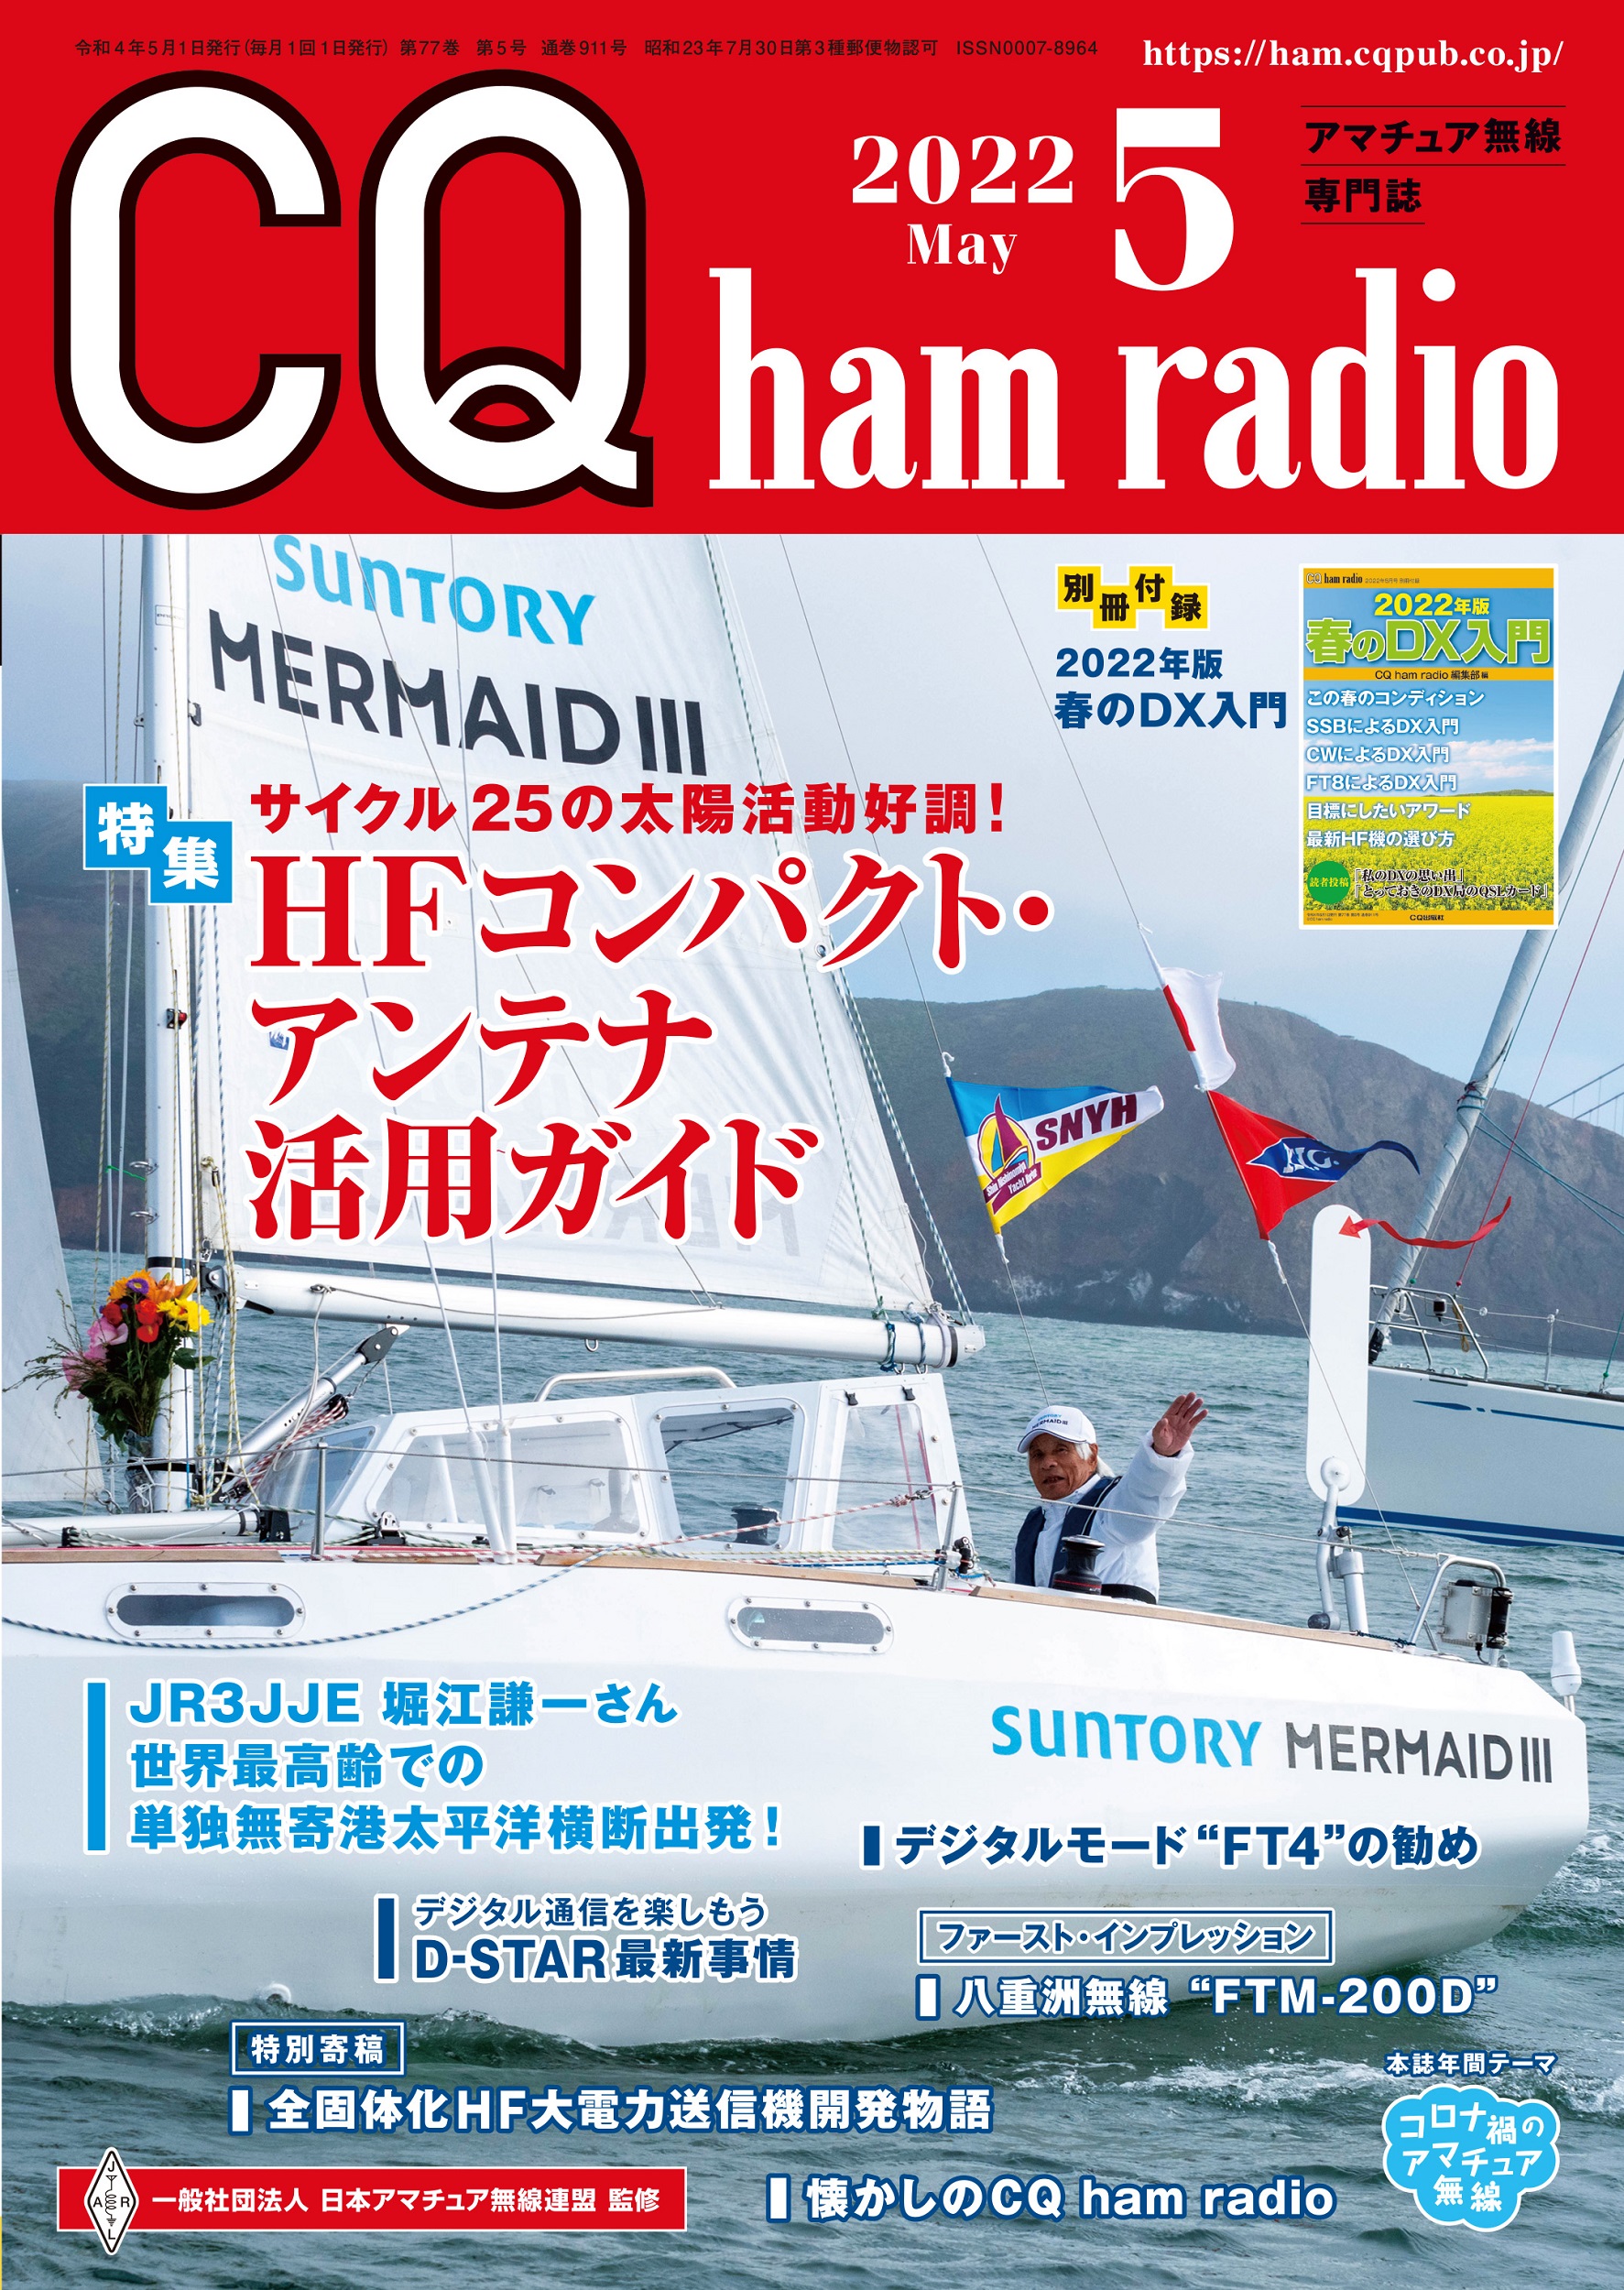 CQ ham radio 2022年 5月号